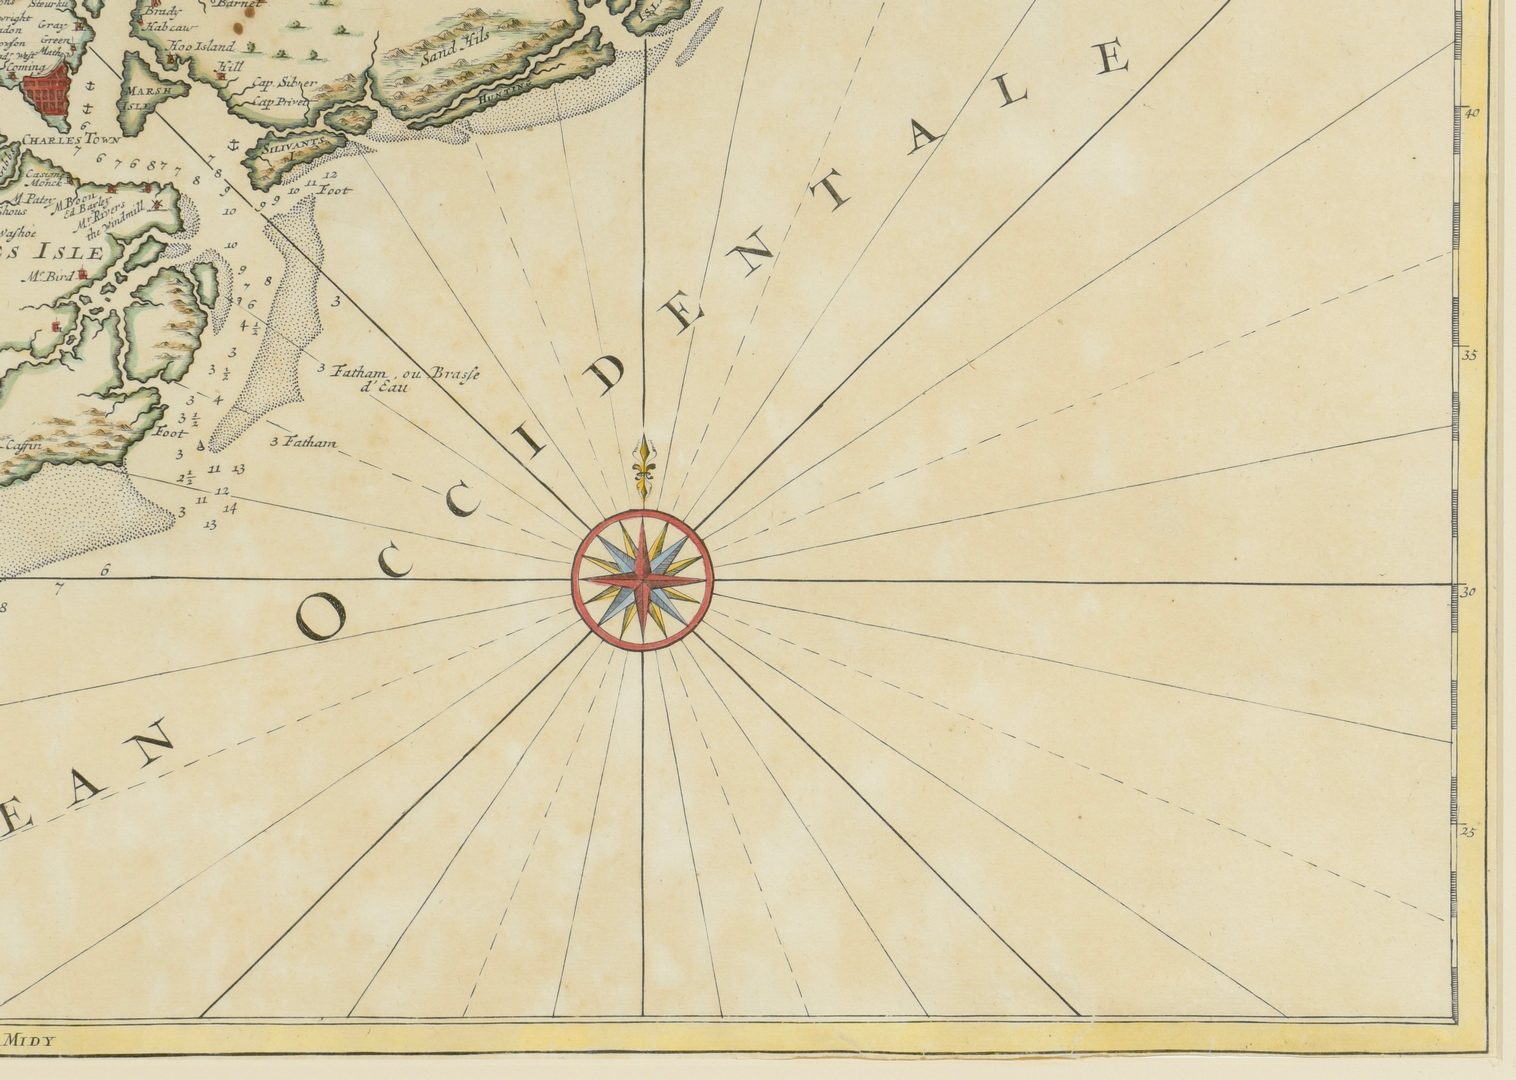 Lot 265: Important Early South Carolina Map 1696